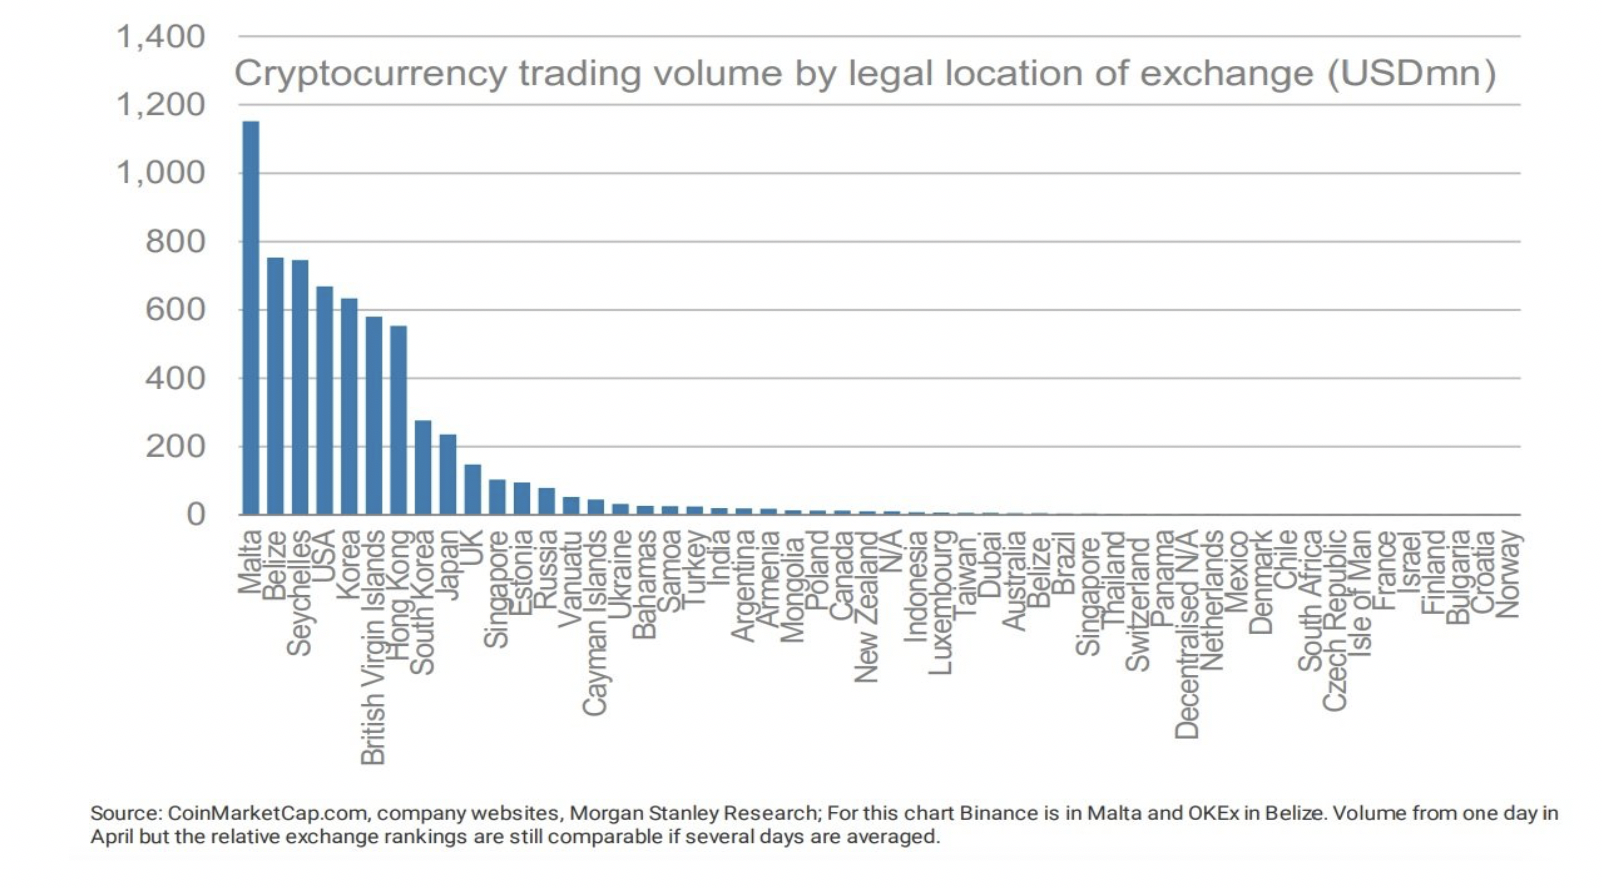 Объемы торгов криптовалютой в разбивке по странам (источник: Morgan Stanley Research).